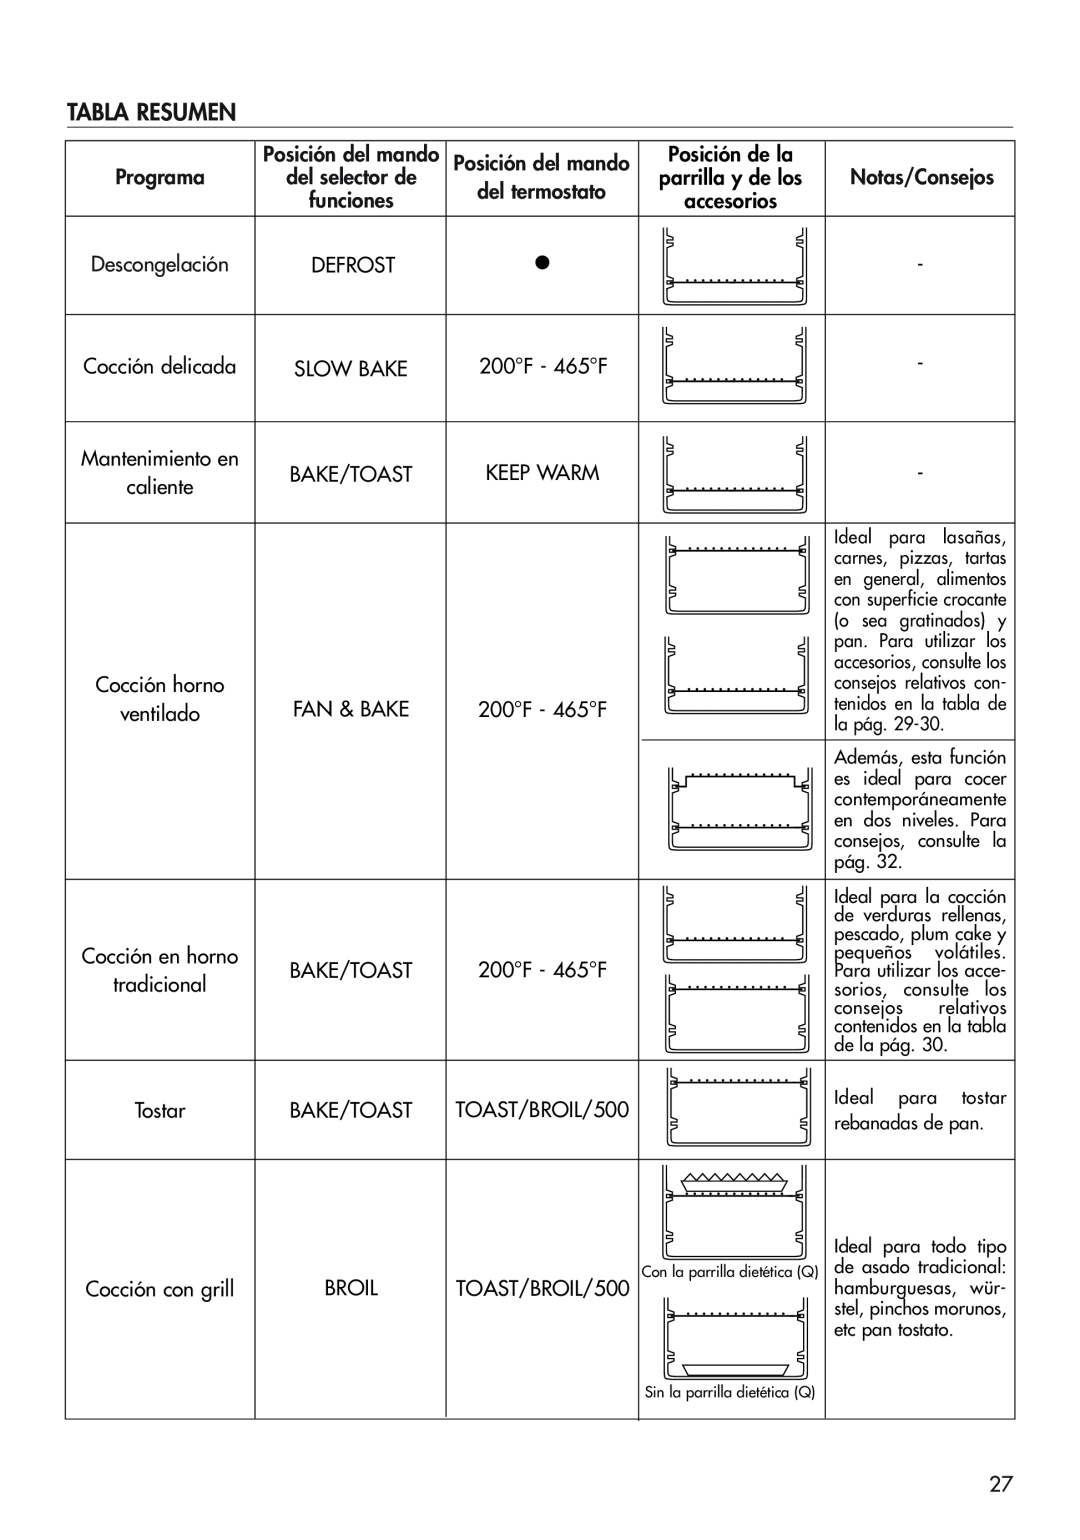 DeLonghi EO1270 B manual Tabla Resumen, Notas/Consejos, parrilla y de los 